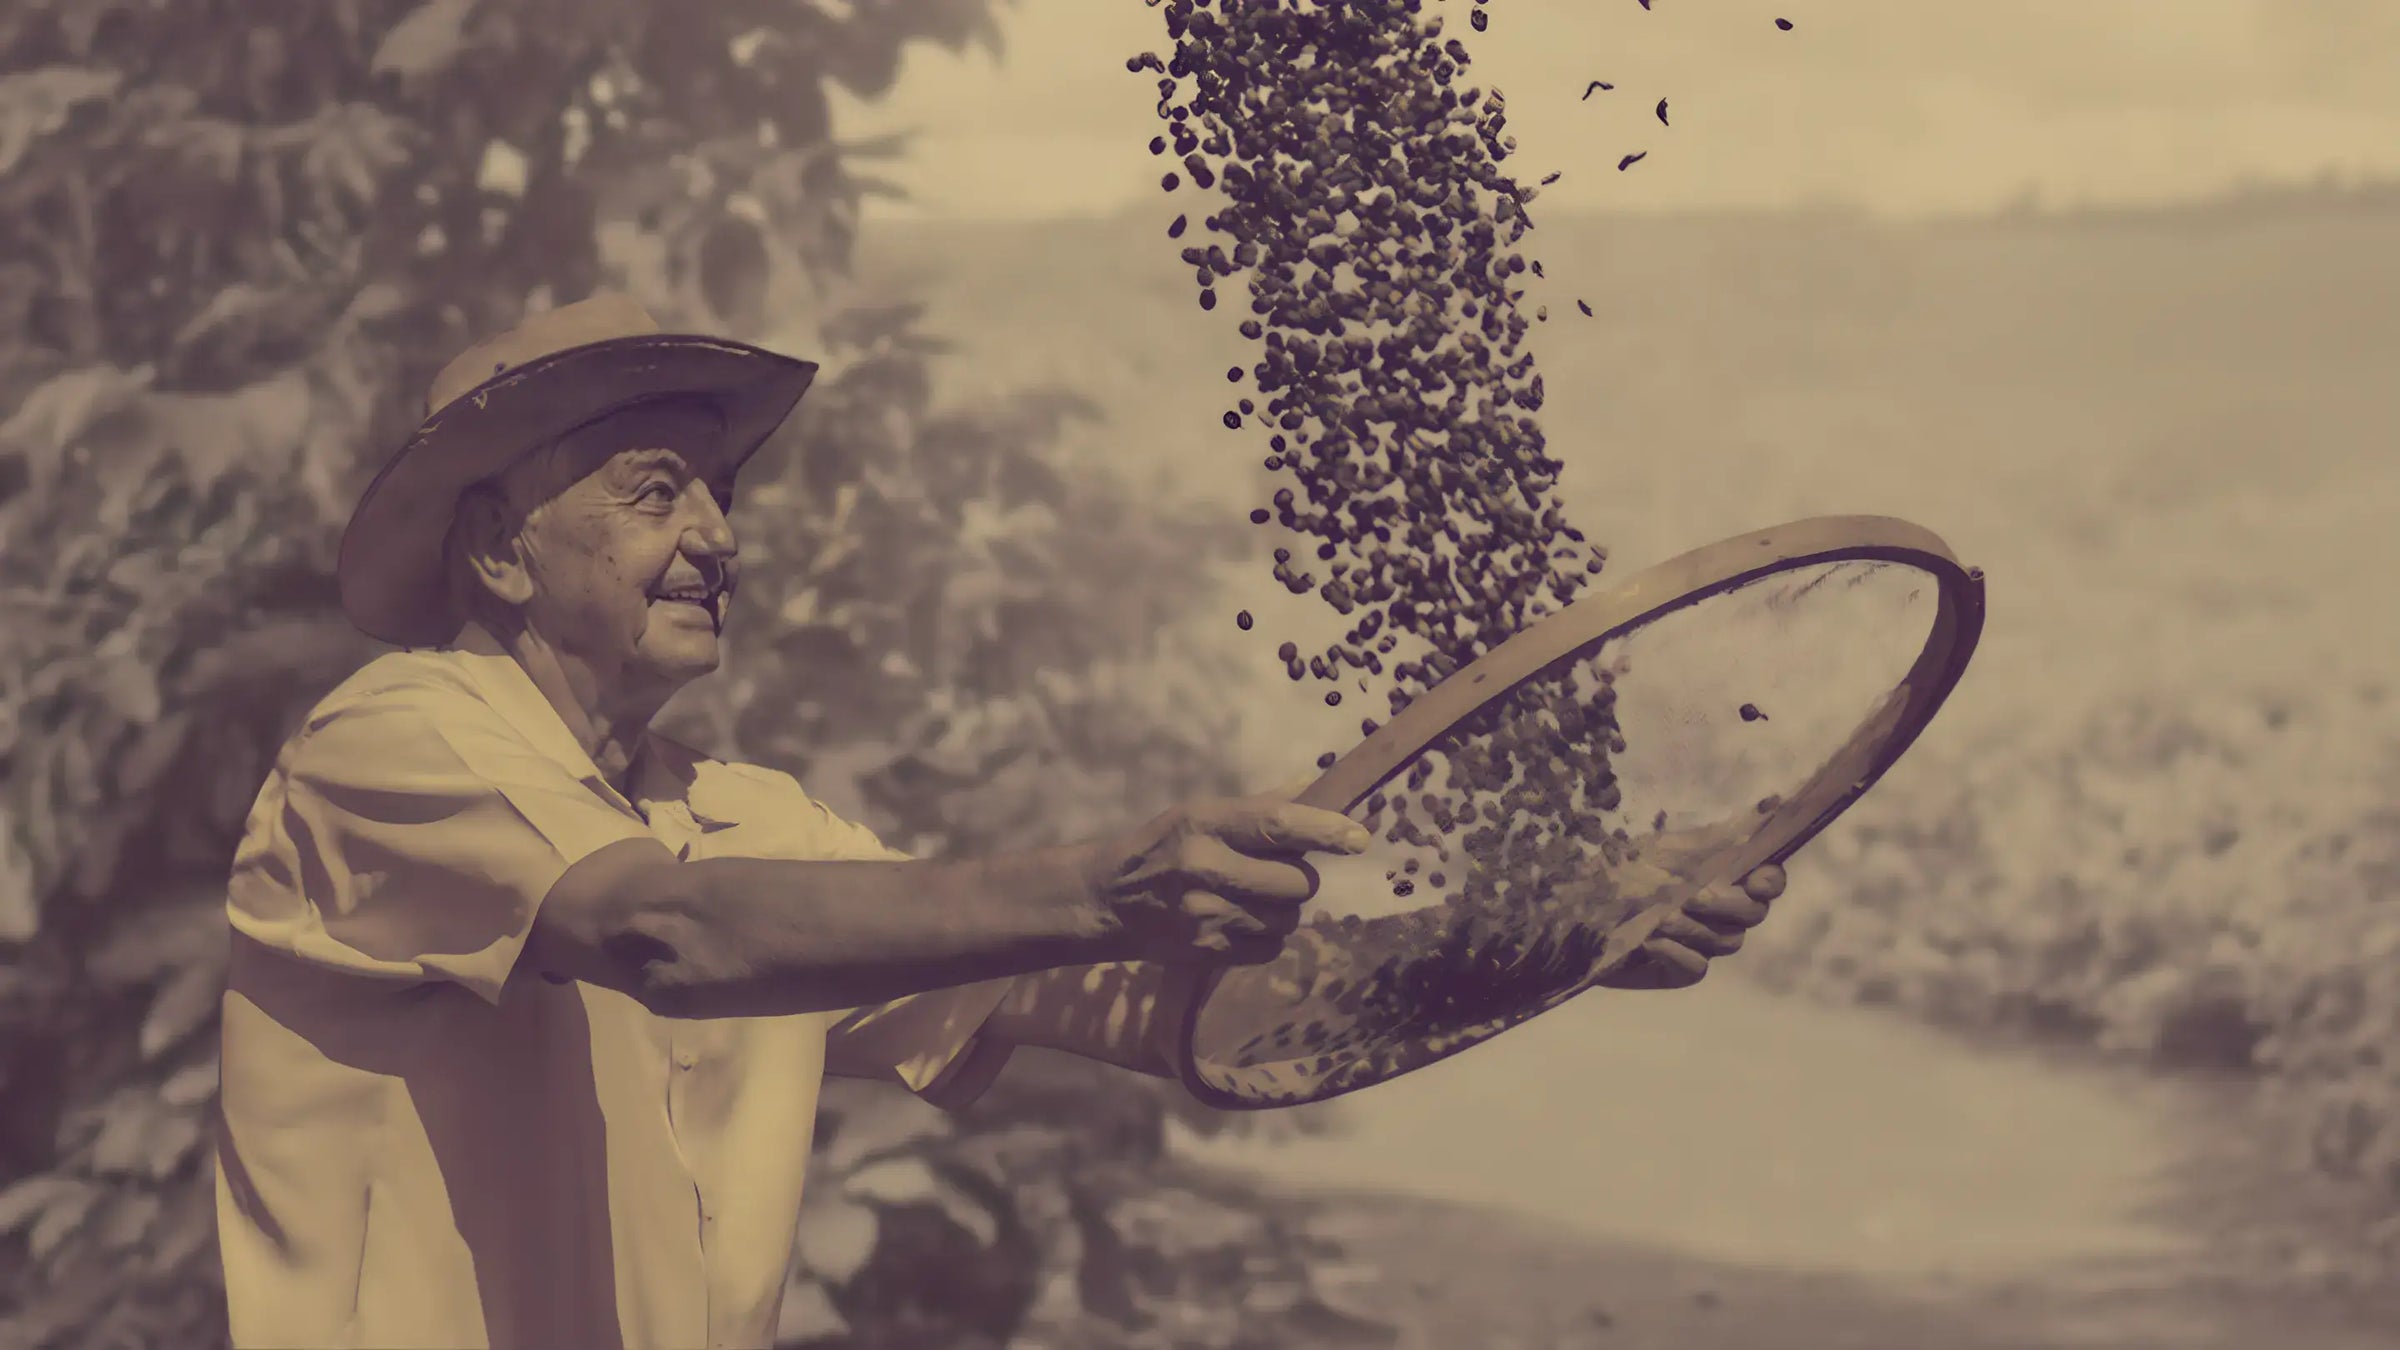 Trabalhador sorridente peneirando grãos de café ao ar livre, em tom sépia